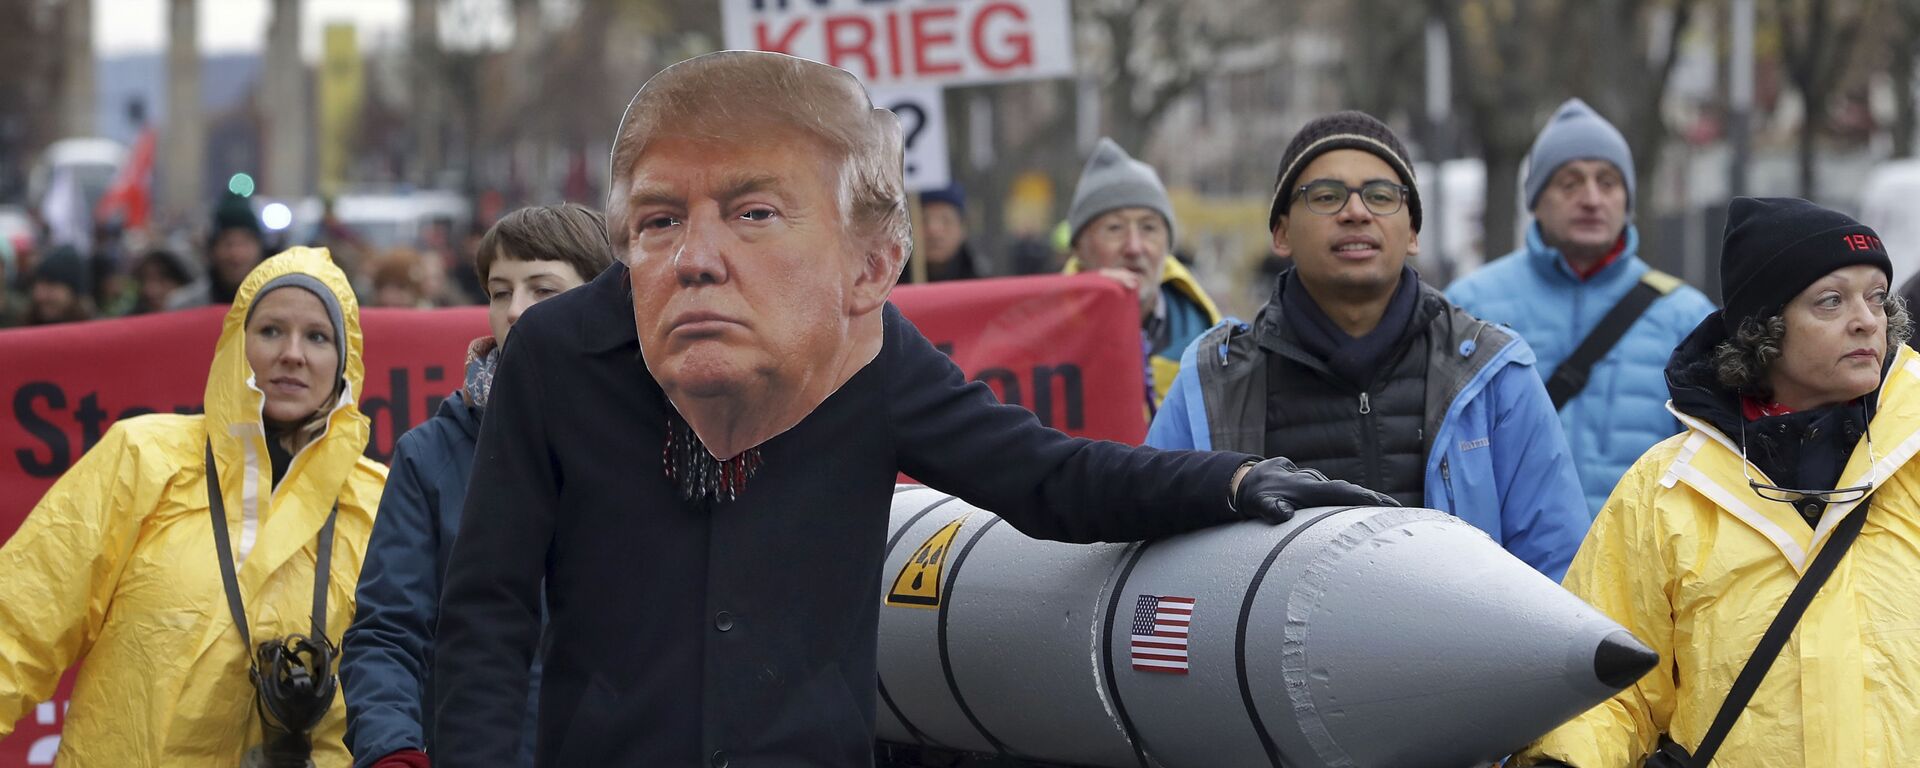 یک معترض ضد جنگ در روز شنبه، 18 نوامبر 2017، در برلین، آلمان، در جریان تظاهرات ضد هسته‌ای در نزدیکی دروازه براندنبورگ، ماسکی را به تصویر می‌کشد که دونالد ترامپ، رئیس‌جمهور آمریکا را به تصویر می‌کشد - Sputnik International 1920 02/29/2024